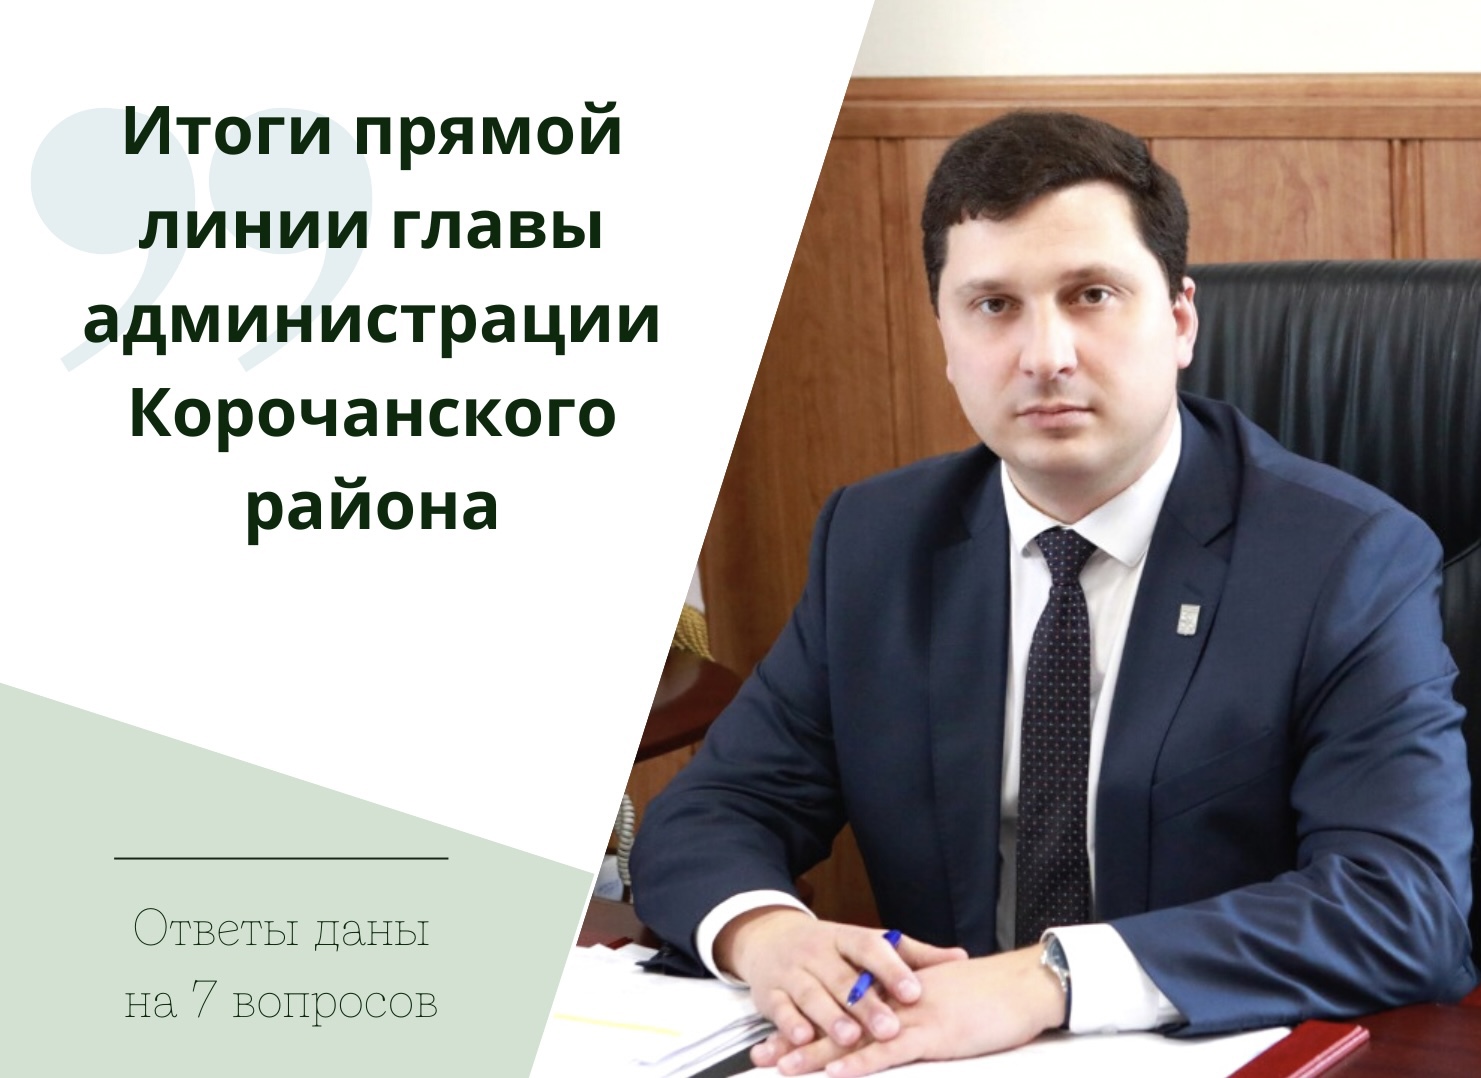 Глава администрации района Николай Нестеров провёл традиционный прямой эфир в социальных сетях Жители задали 7 вопросов.